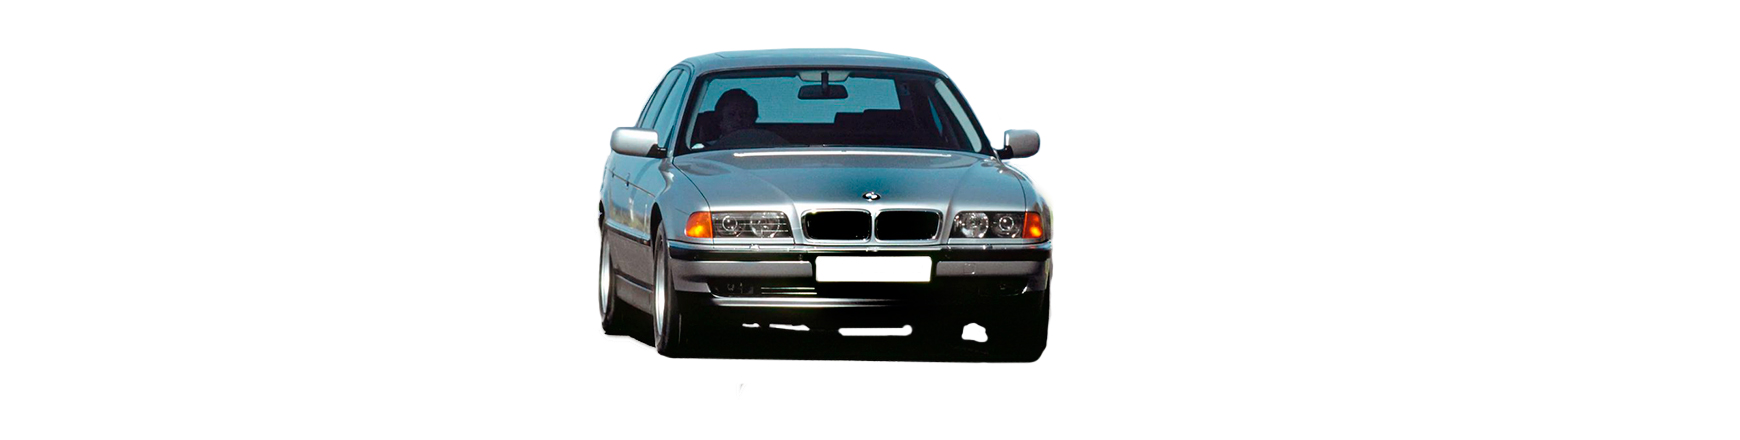 Piezas y Recambios De BMW SERIE 7 (E38) 04-1994 A 12-2001 | Veramauto.es